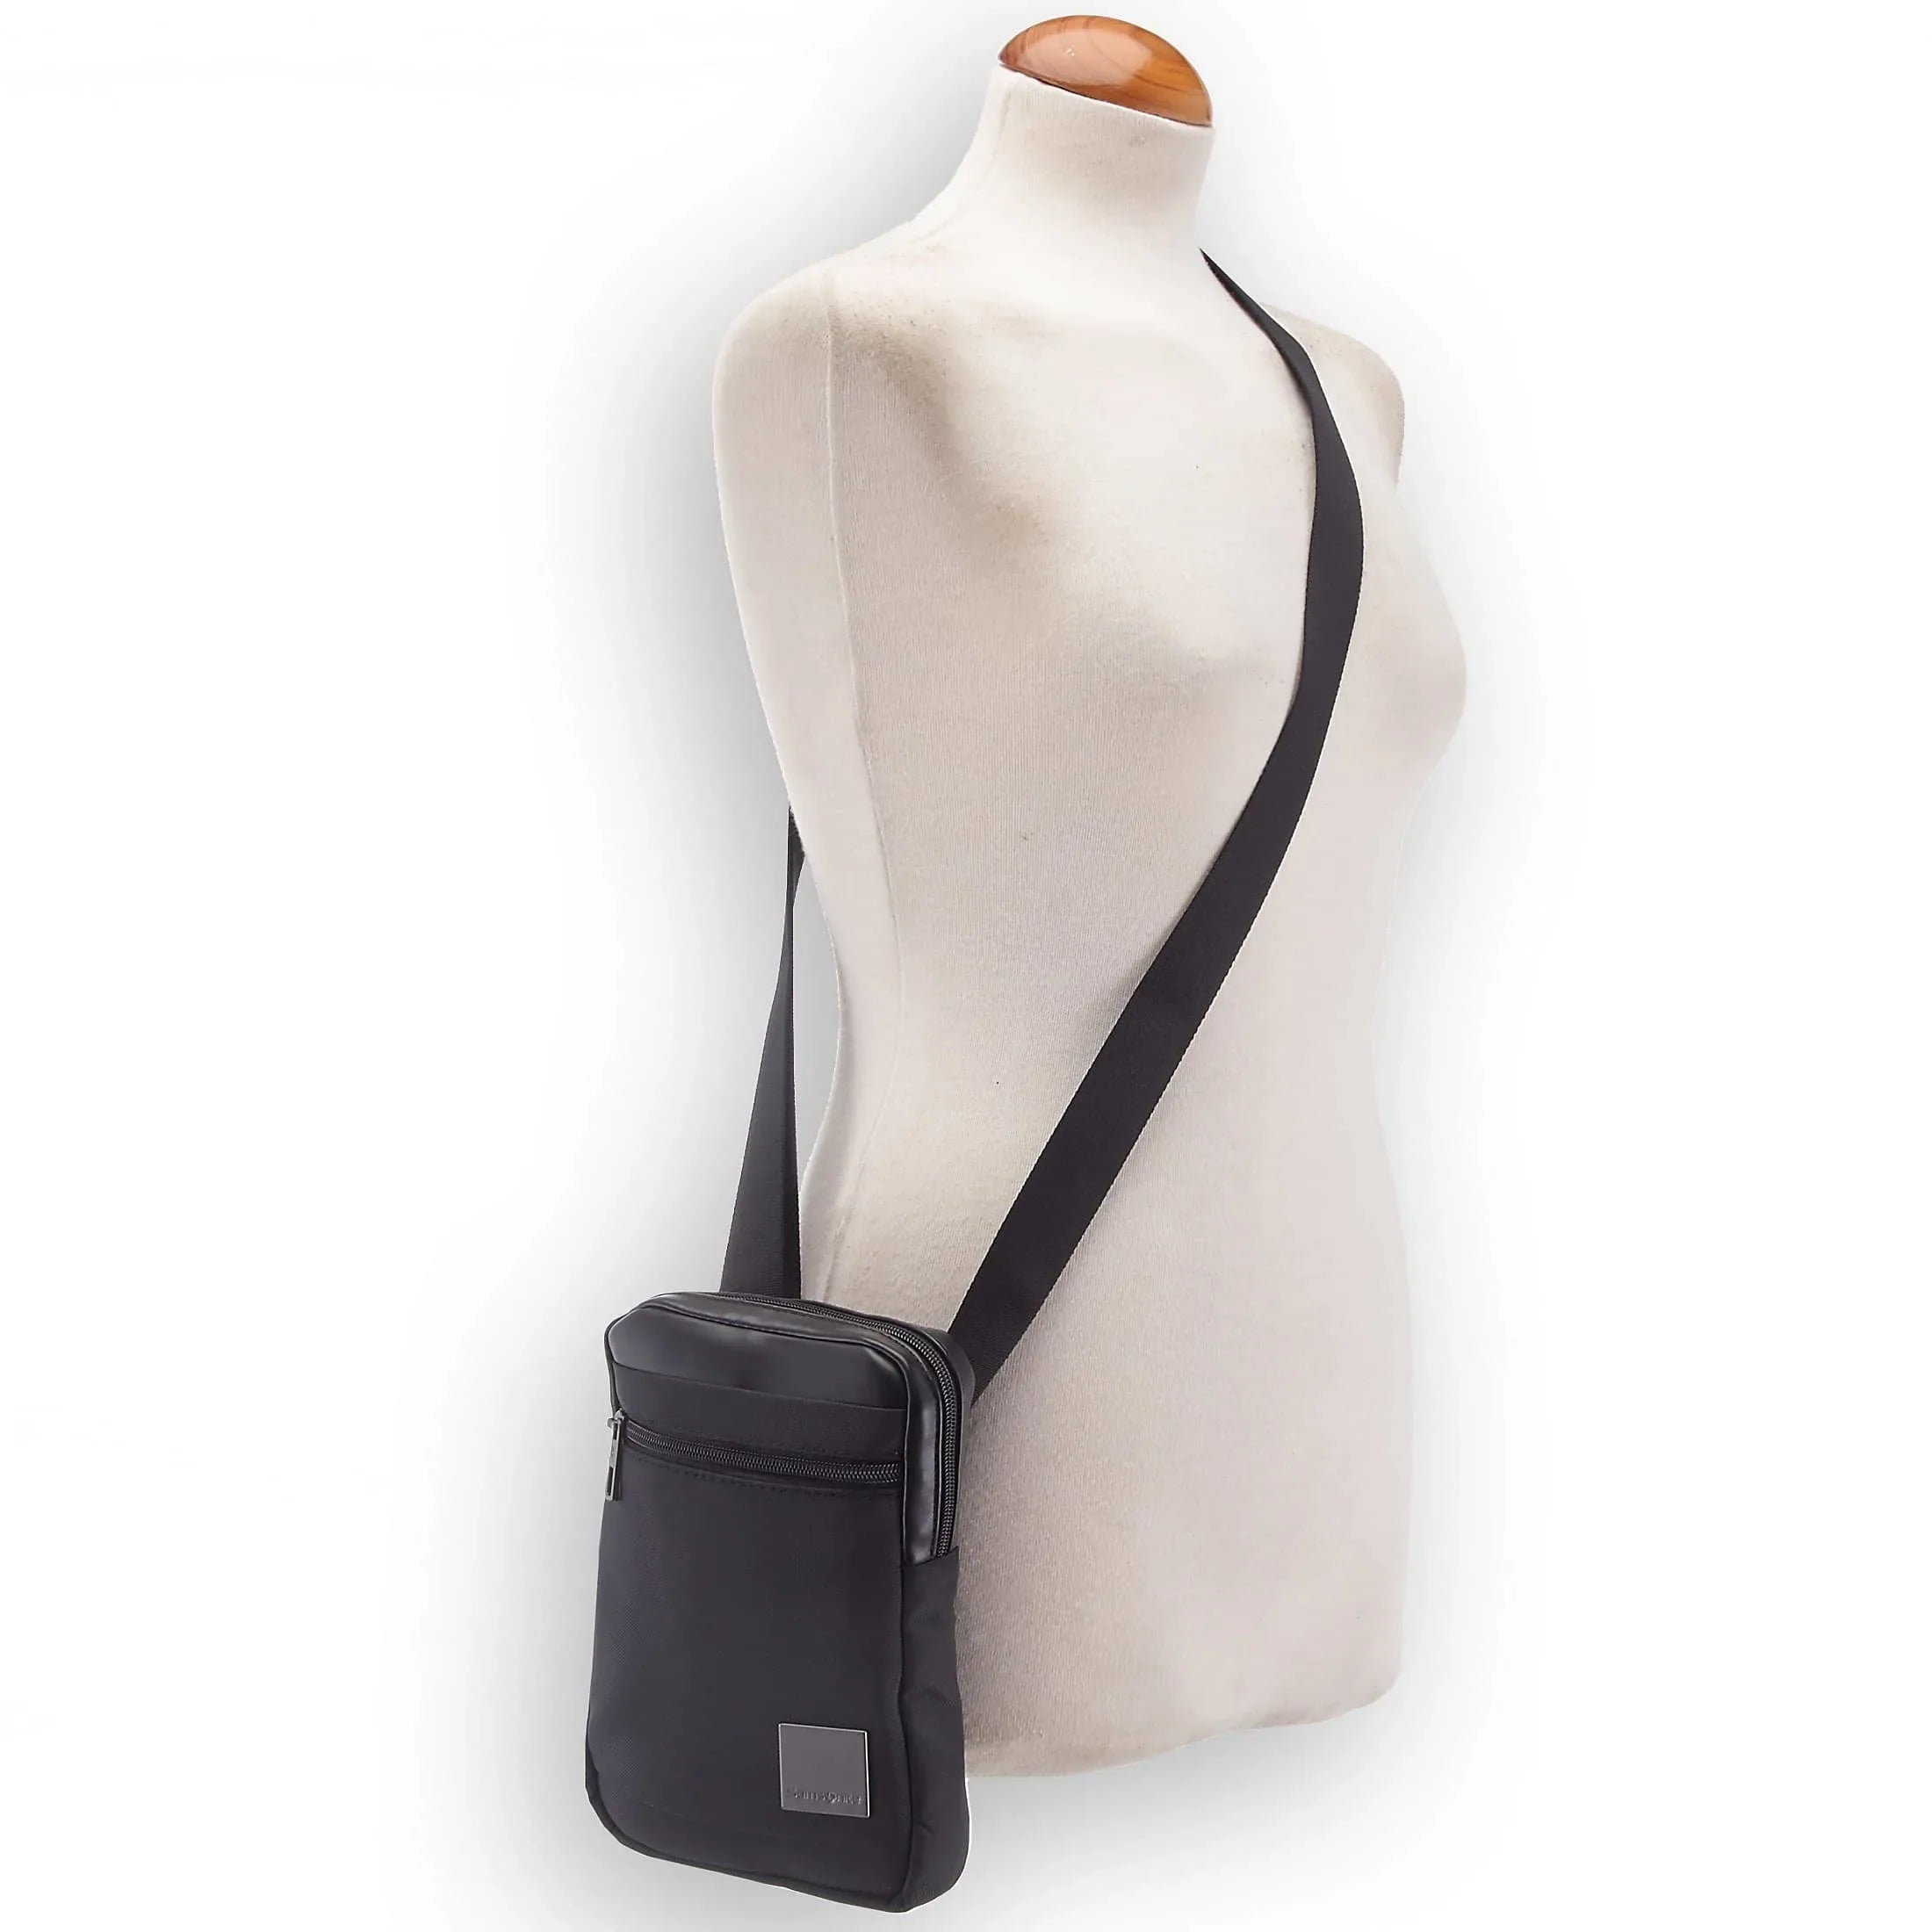 Samsonite Hip-Square shoulder bag 23 cm - black